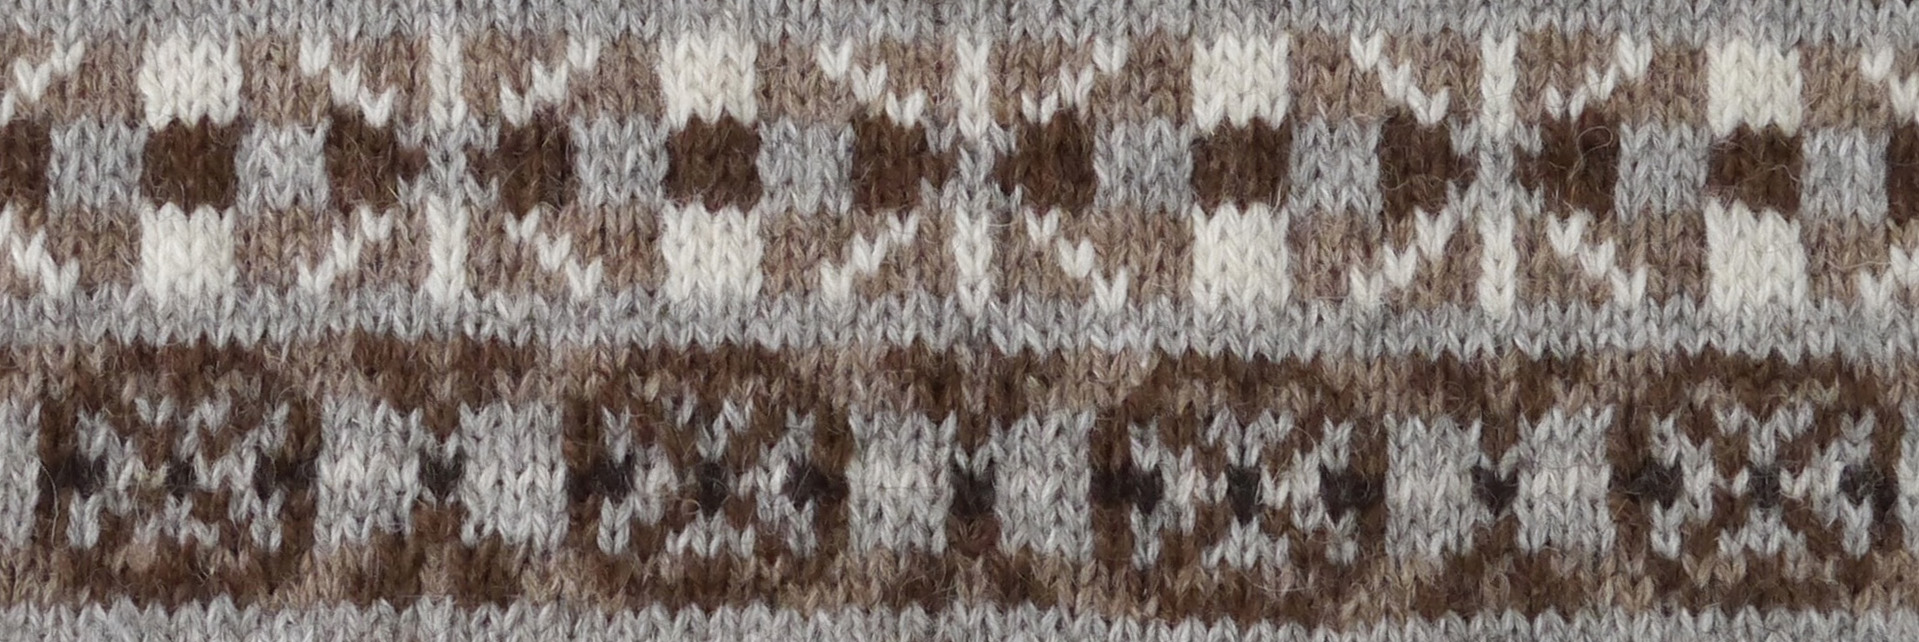 Foula Wool Knitting Pattern1